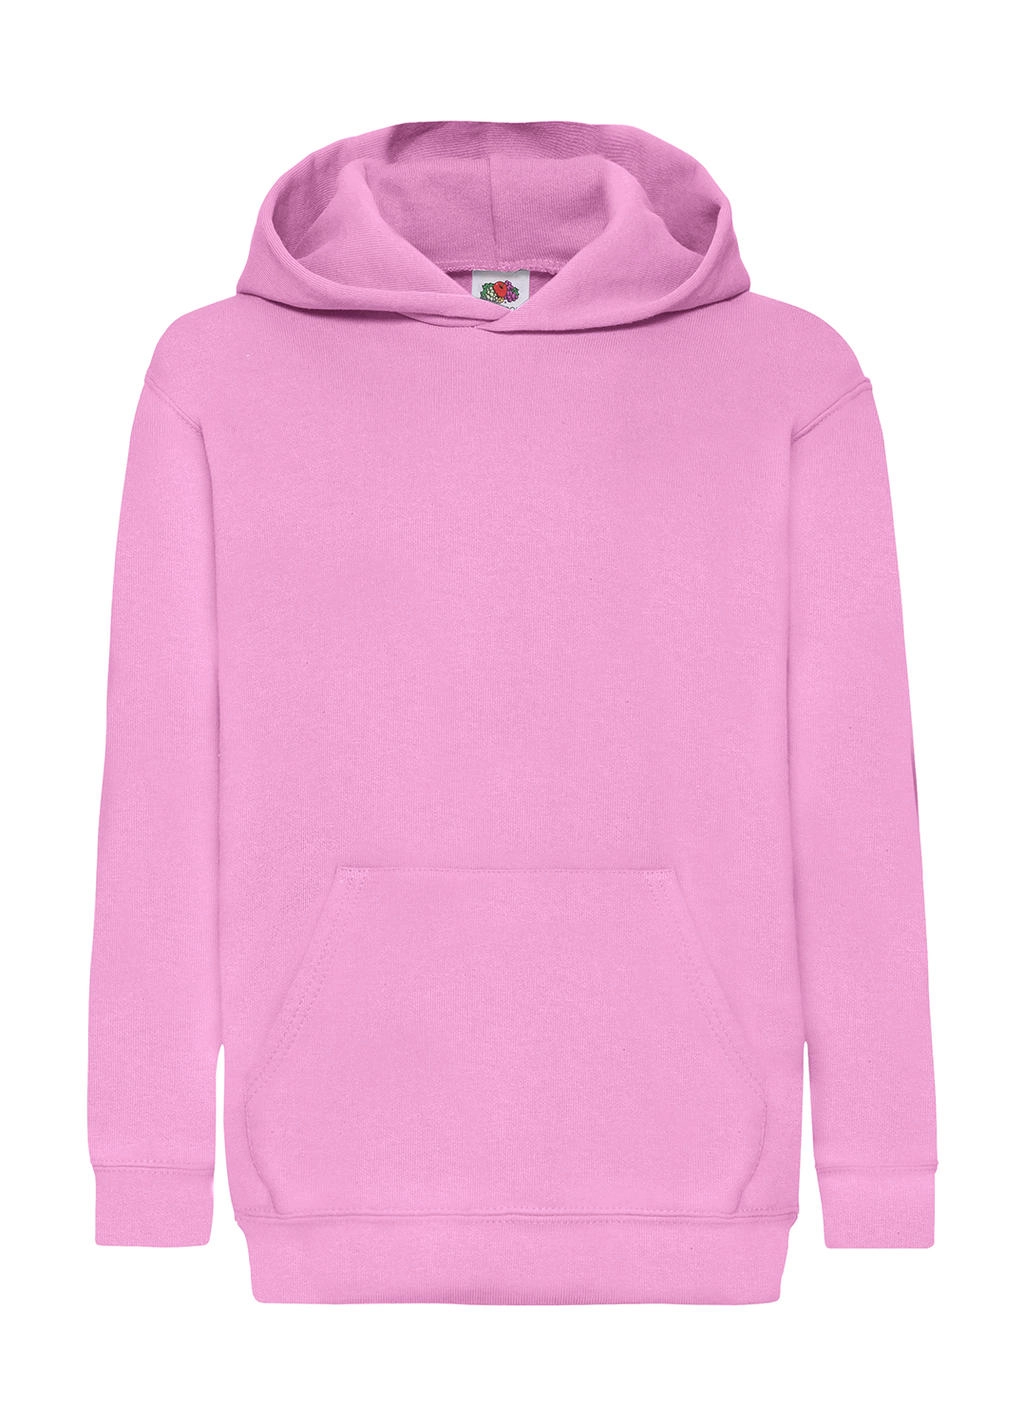 Kids` Classic Hooded Sweat zum Besticken und Bedrucken in der Farbe Light Pink mit Ihren Logo, Schriftzug oder Motiv.